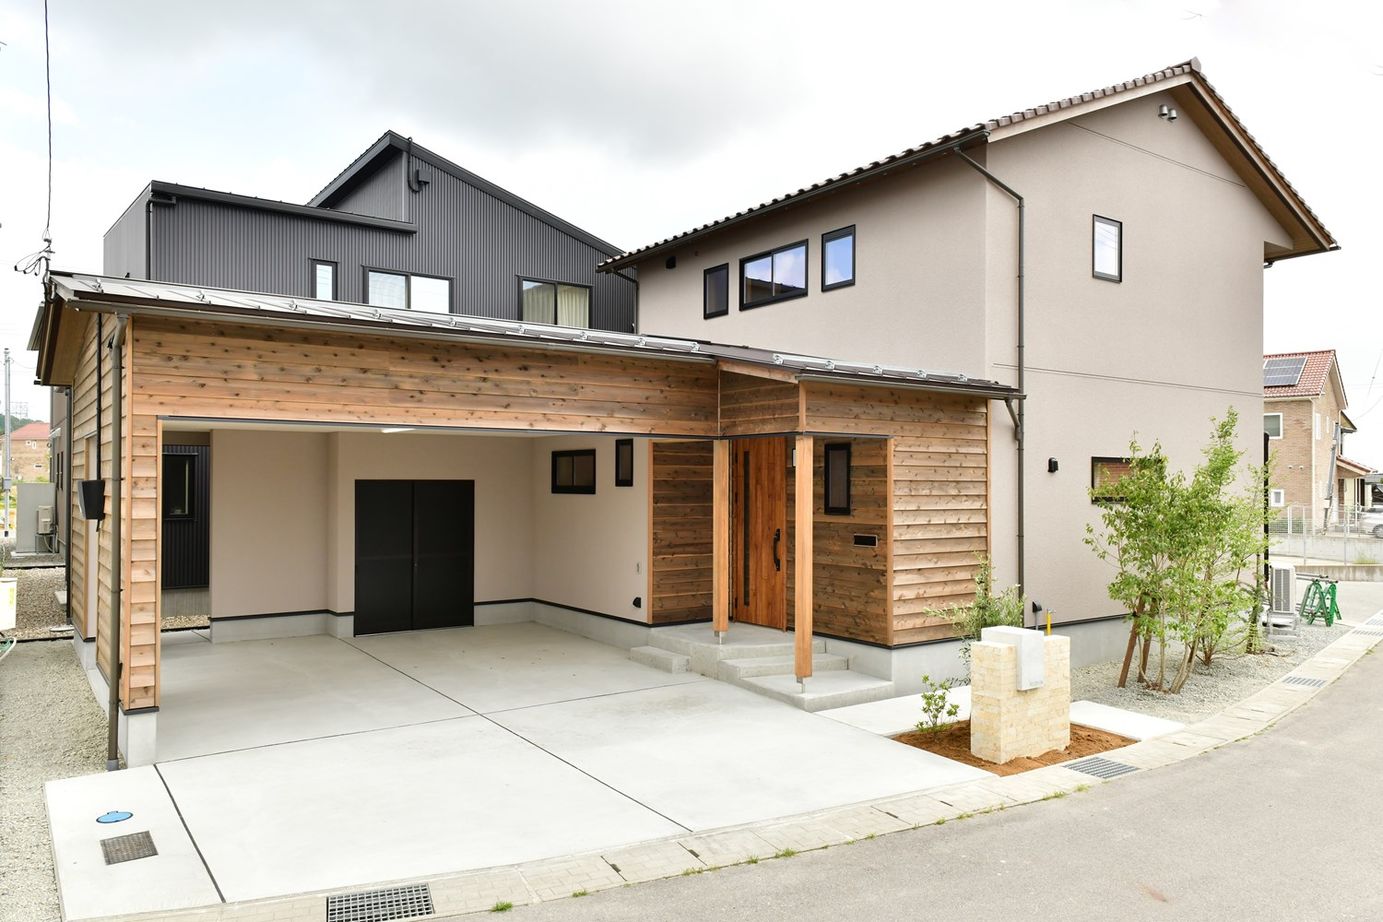 Suumo 木のキッチンとお部屋ごとに変えたベースカラーがかわいい住まい 梶谷建設 の建築実例詳細 注文住宅